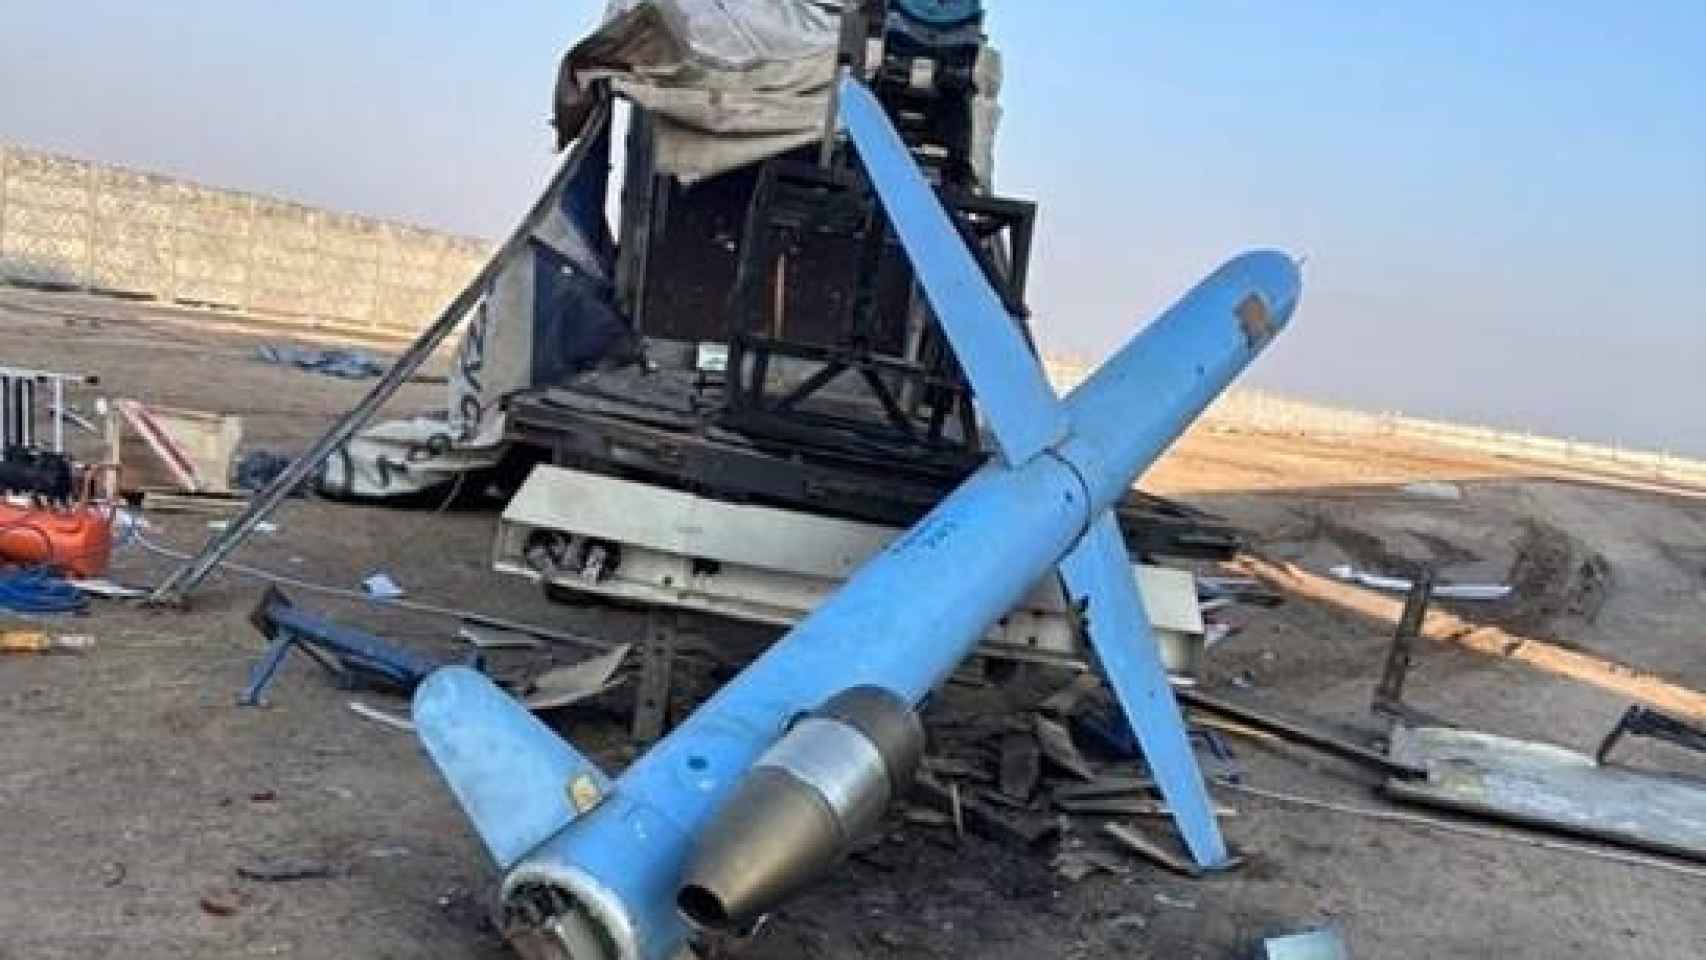 Misil de crucero de ataque terrestre y de diseño iraní. Encontrado por la policía iraquí el 3 de diciembre al sur de Bagdad, en Babilonia